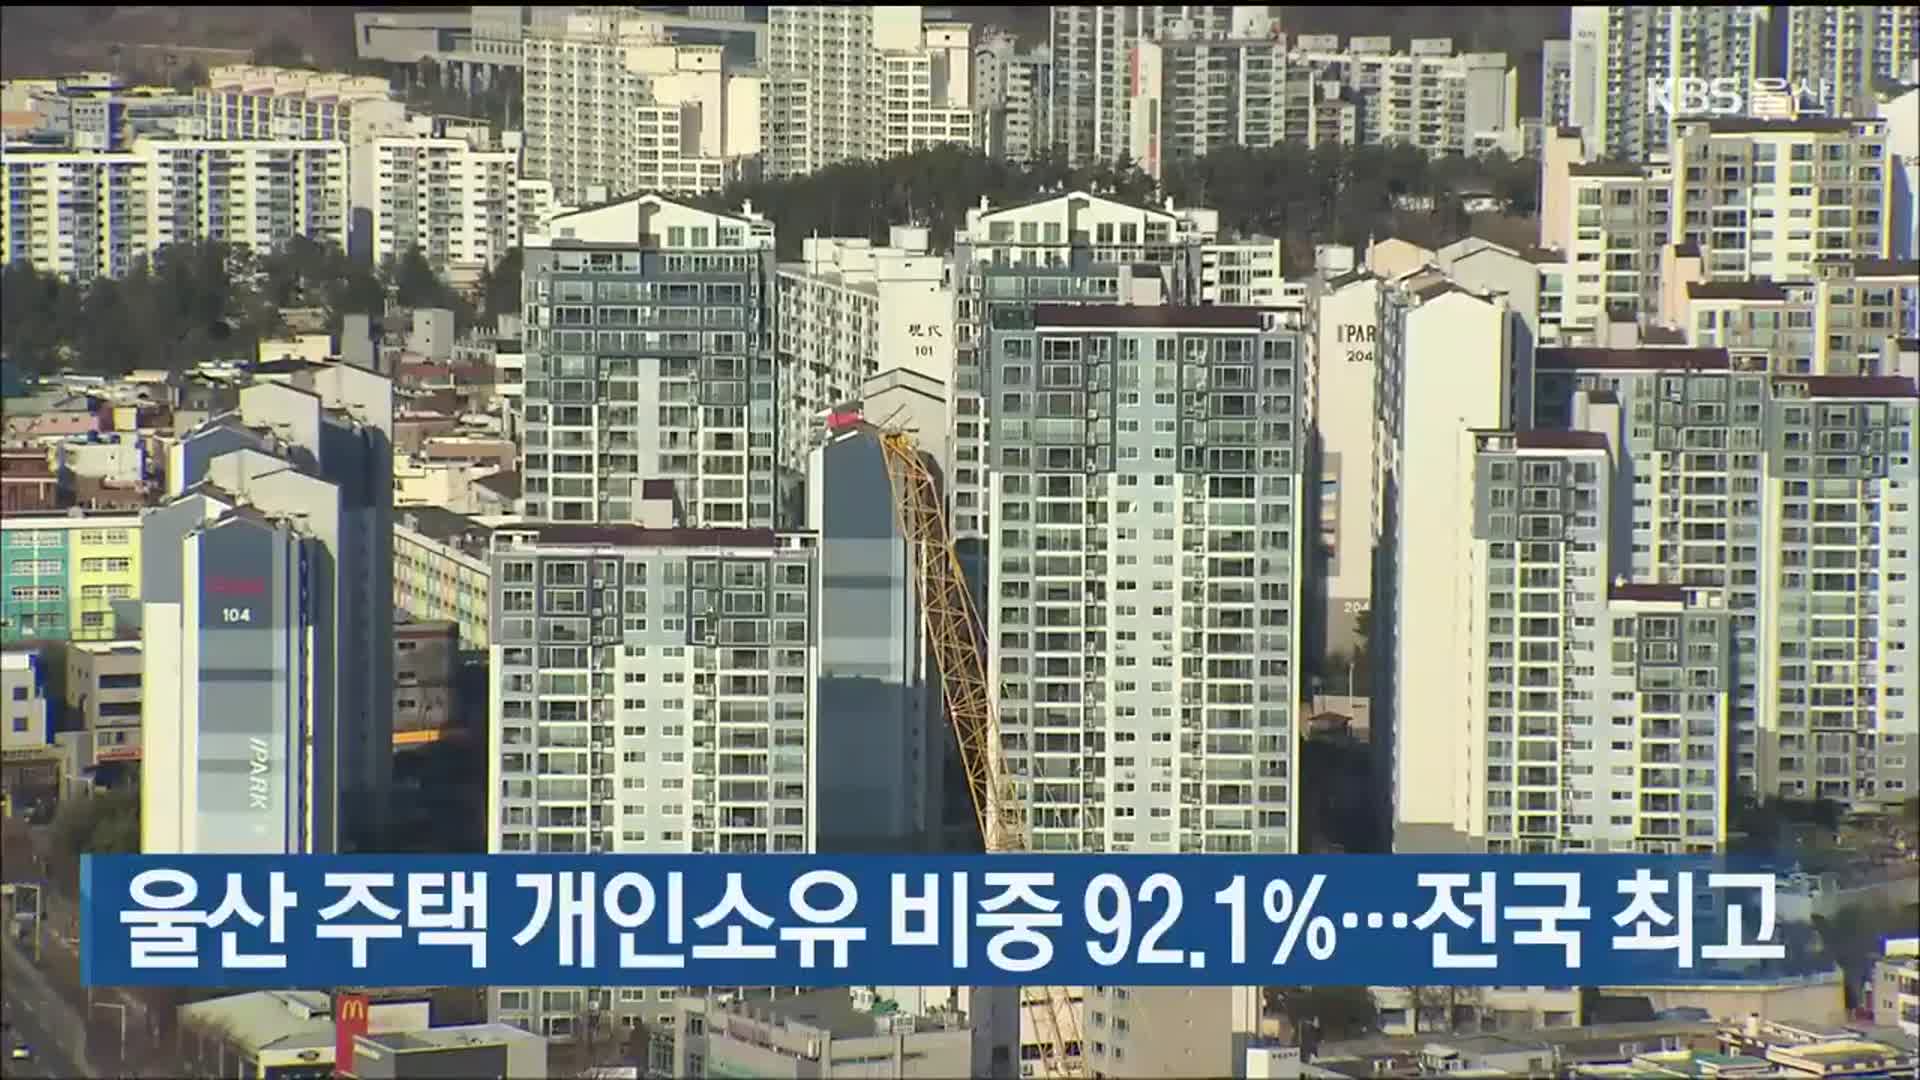 울산 주택 개인소유 비중 92.1%…전국 최고